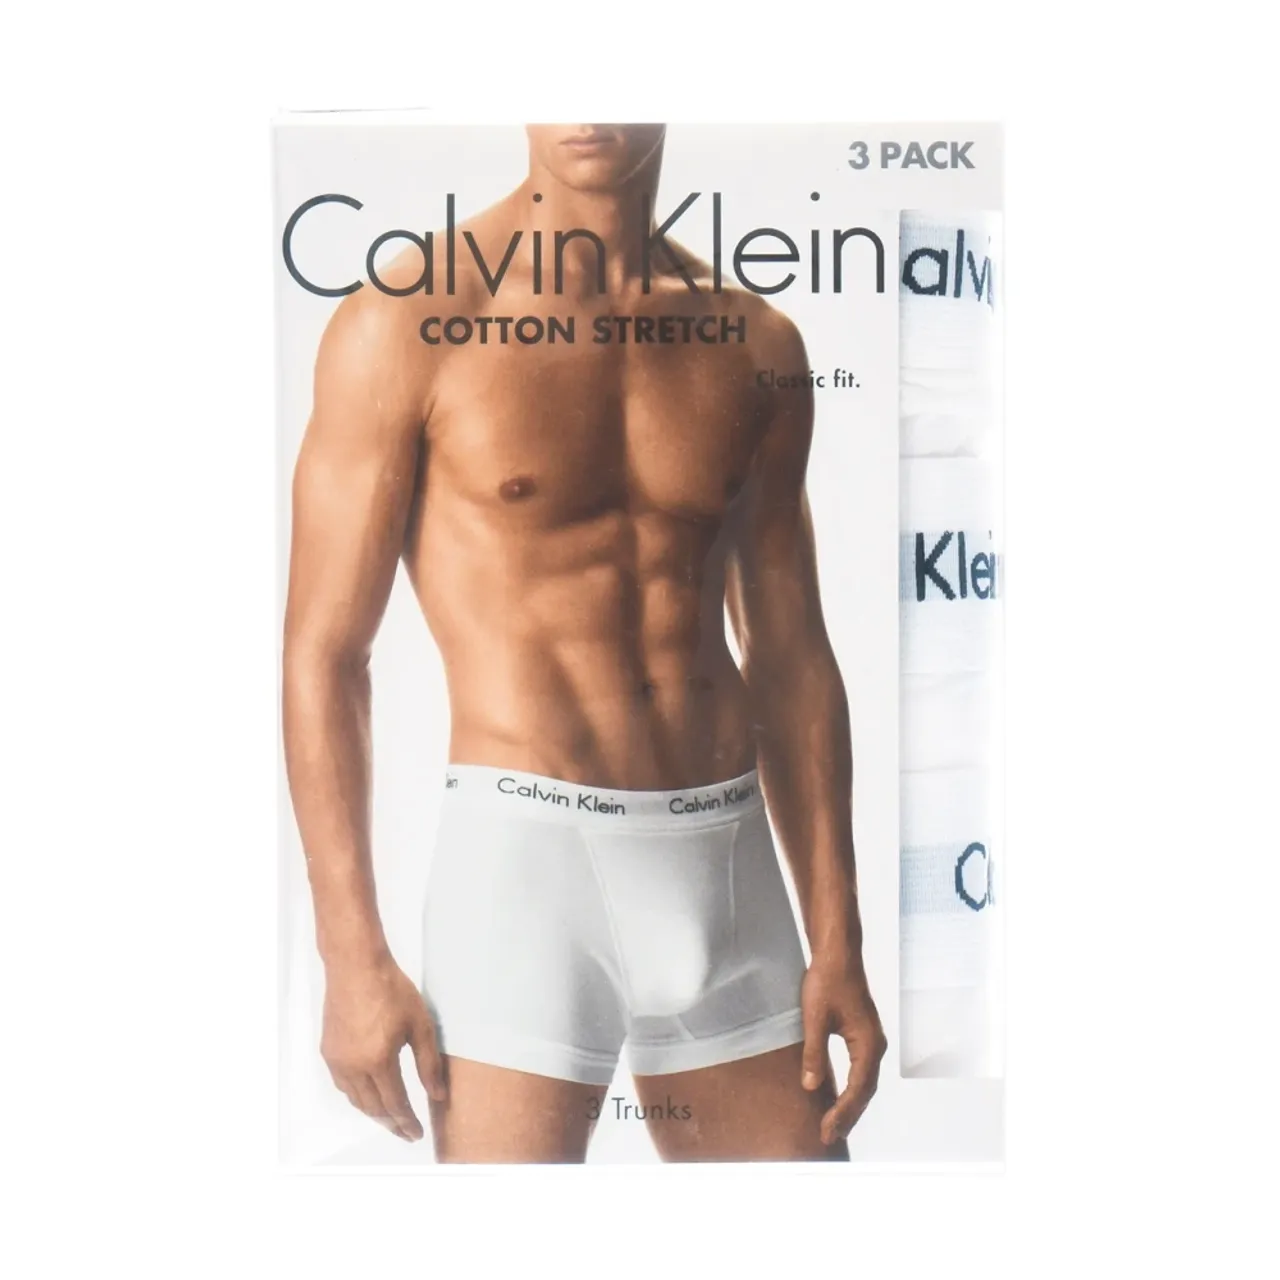 Bottoms Calvin Klein